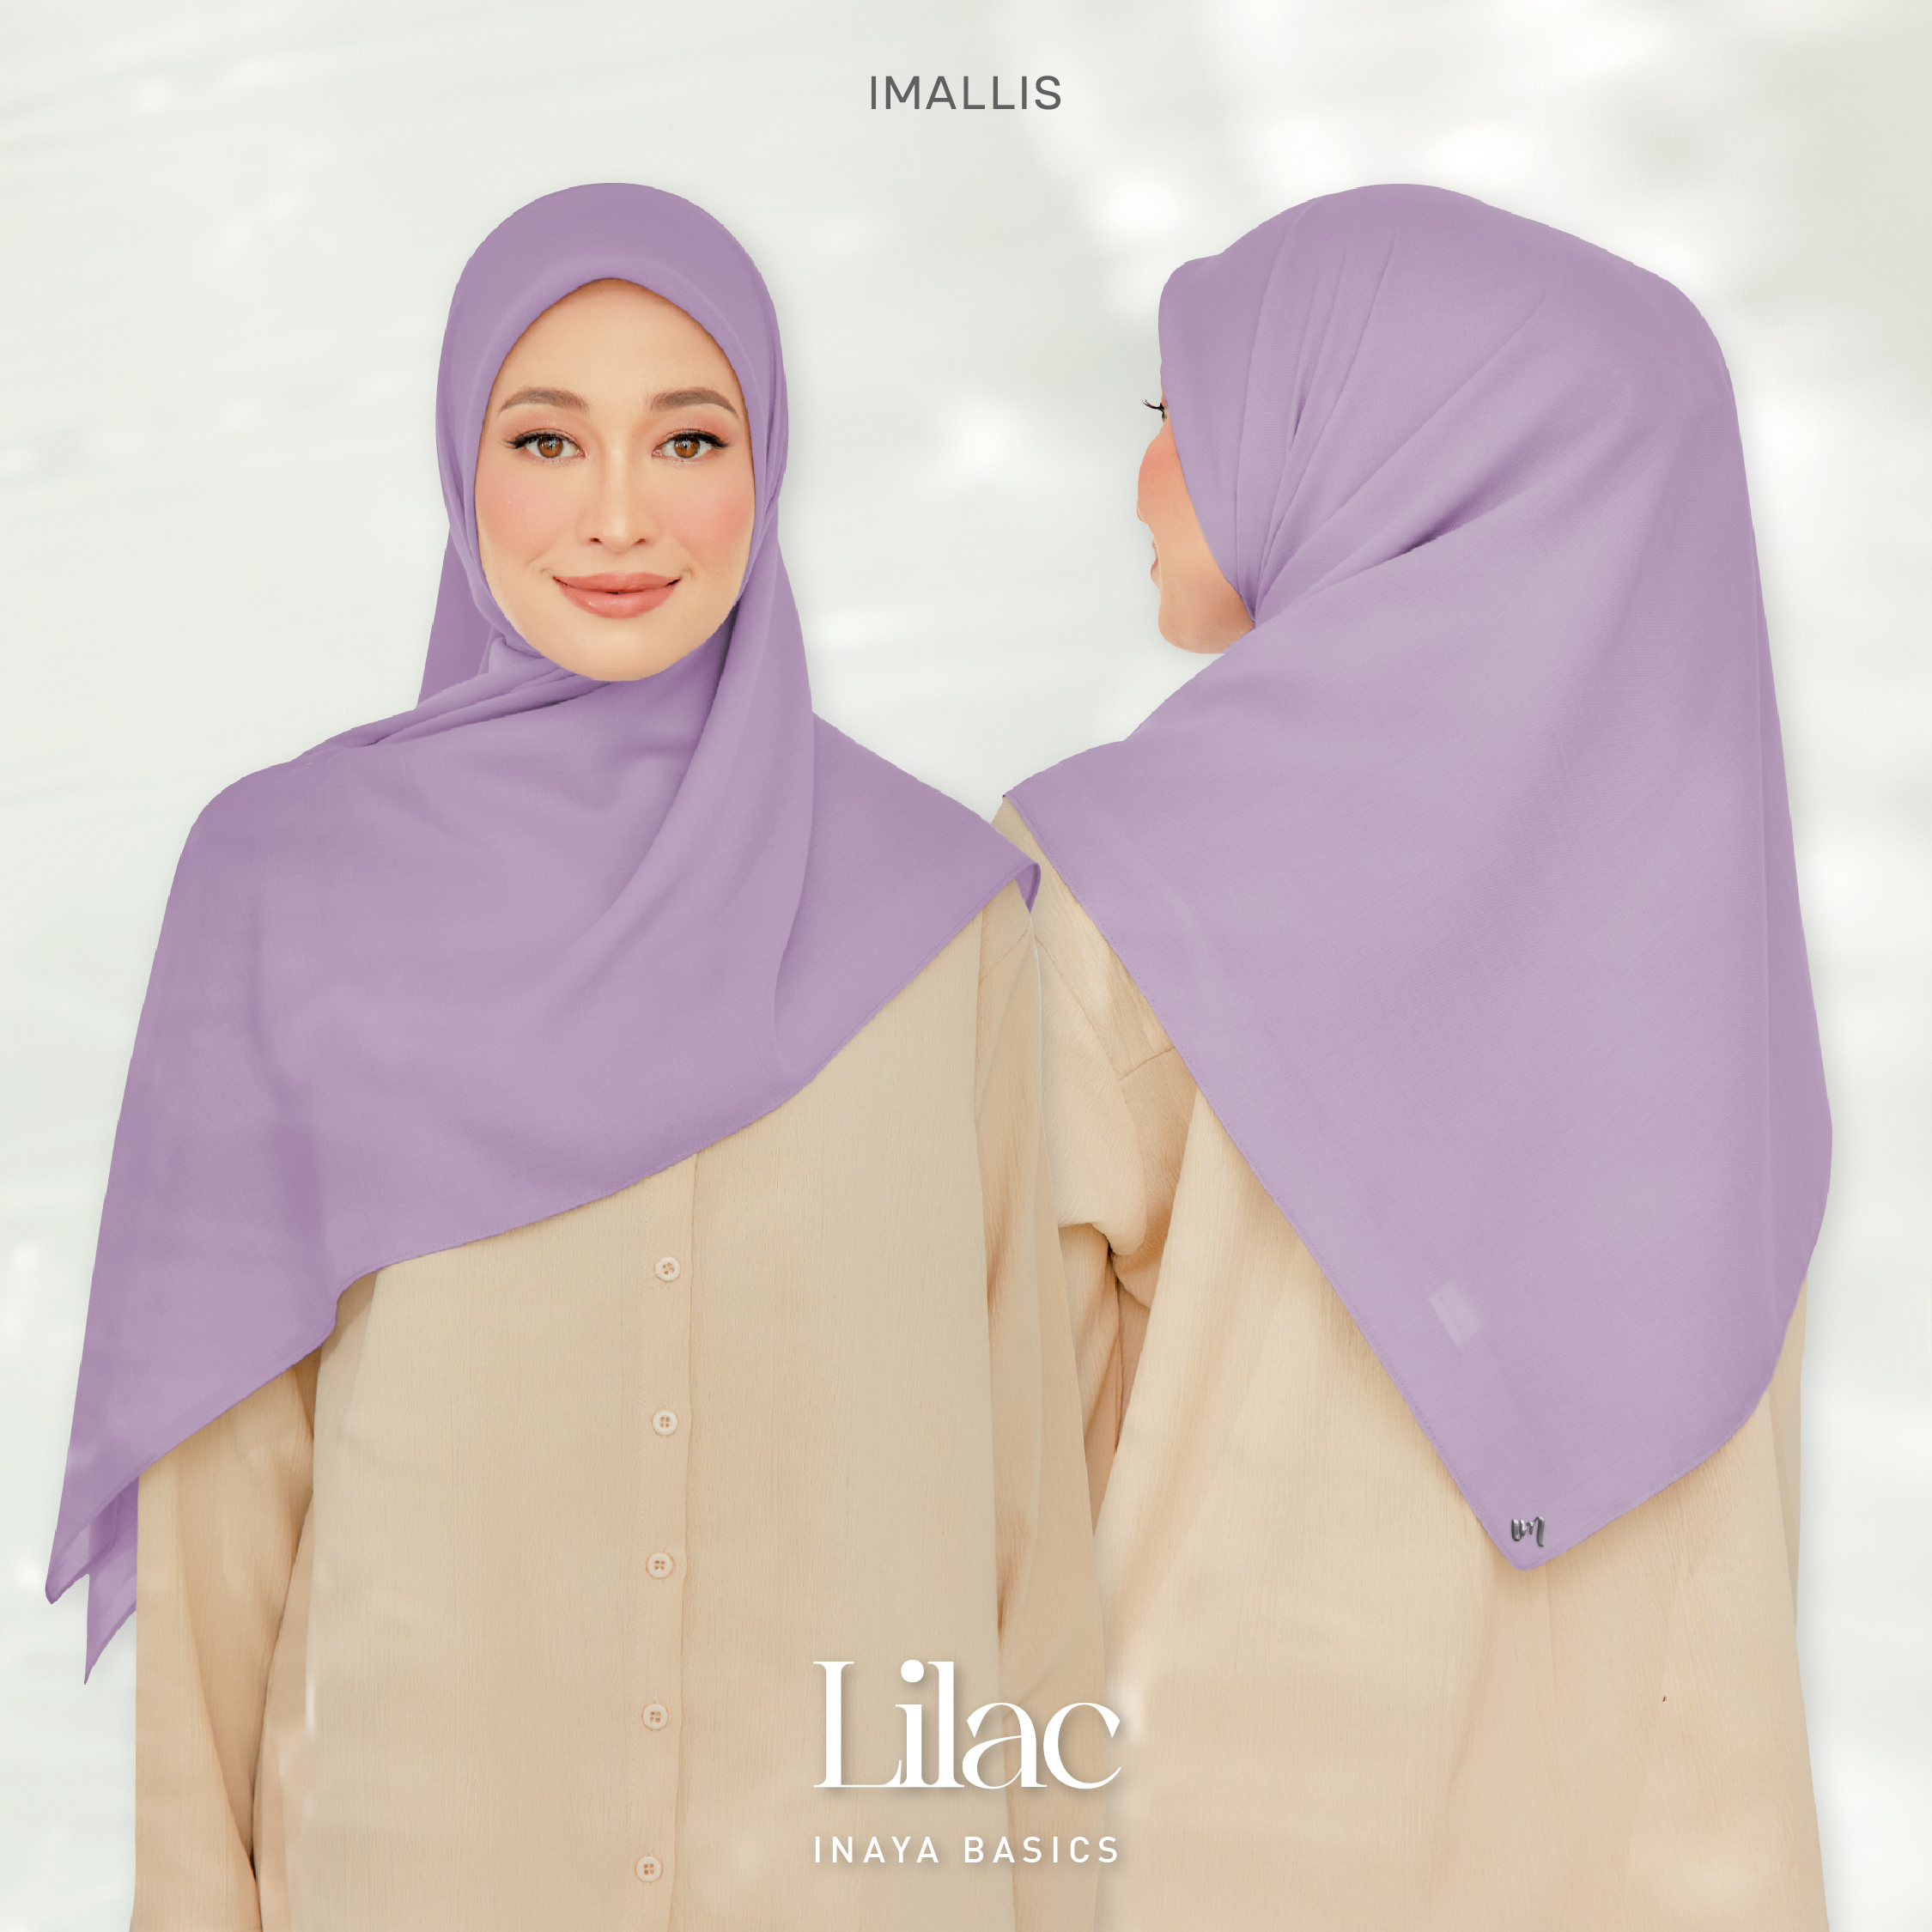 Inaya Basics - Lilac-01